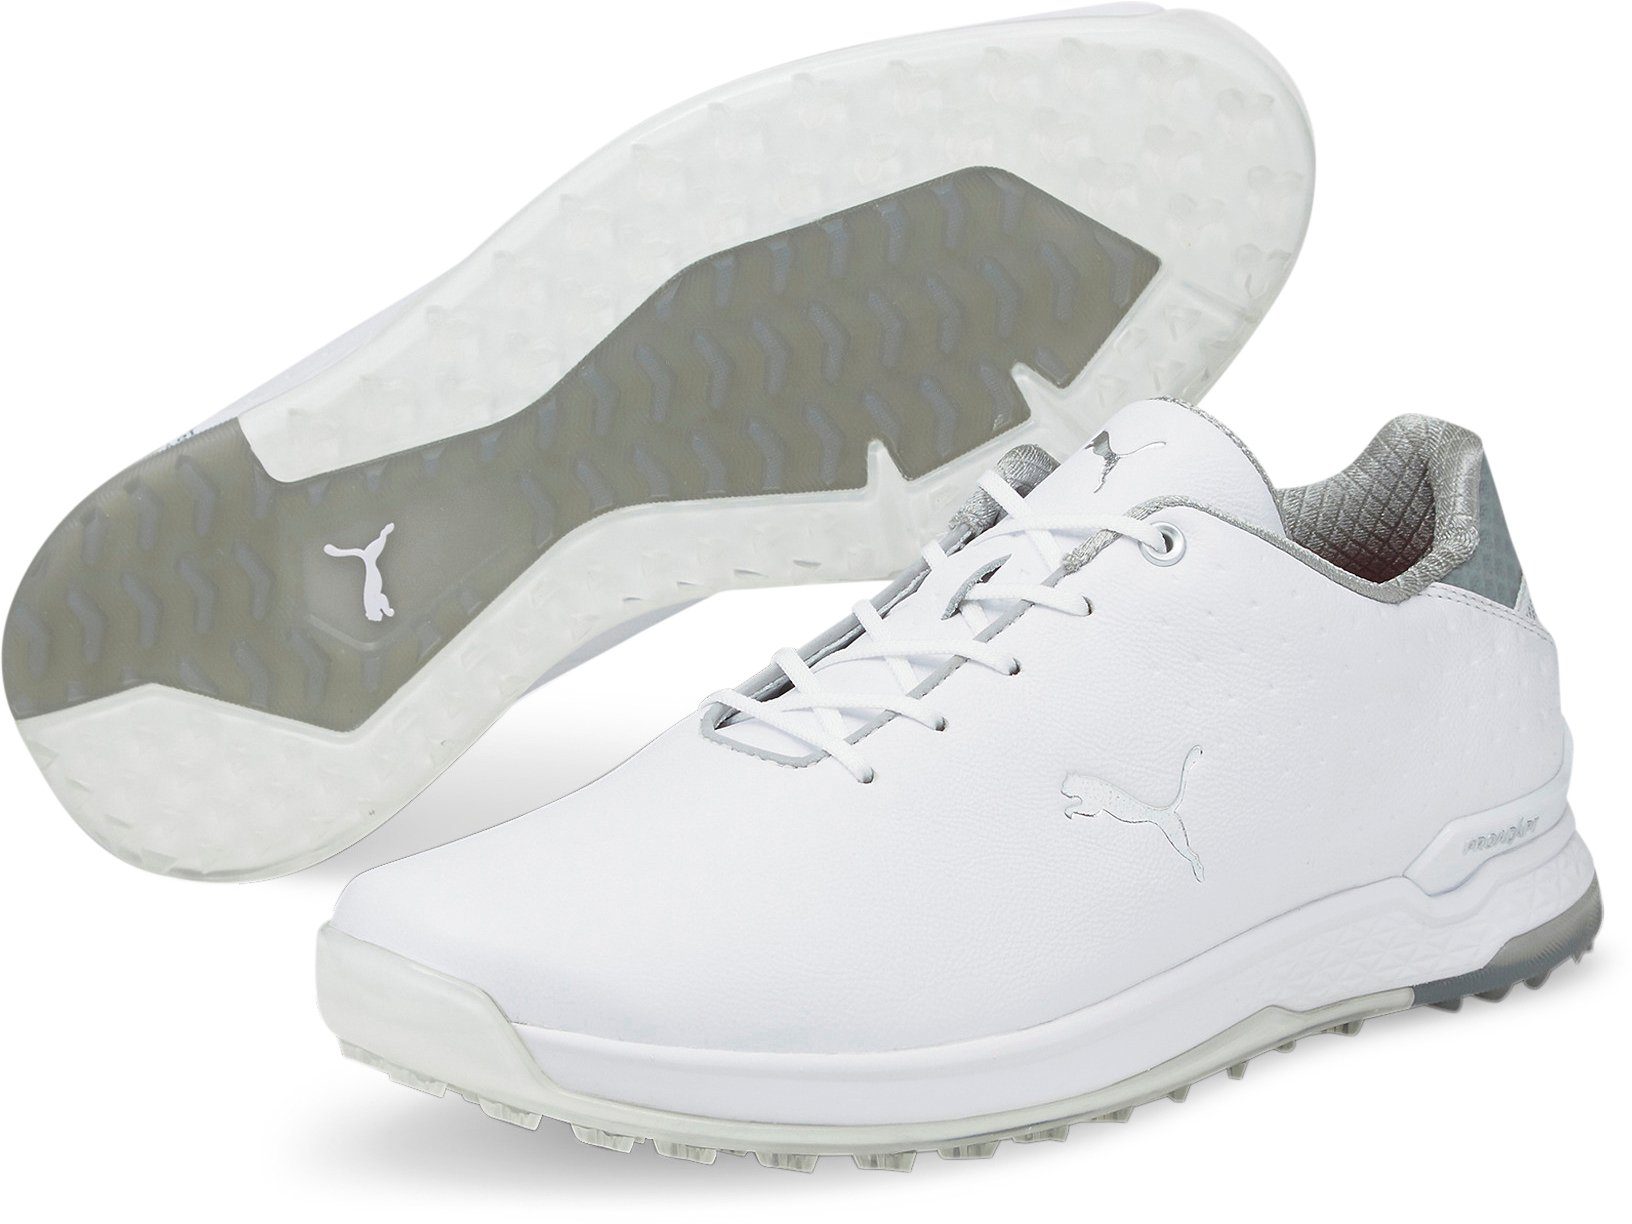 Schuhe Sportschuhe PUMA PROADAPT ALPHACAT Leather Golfschuh